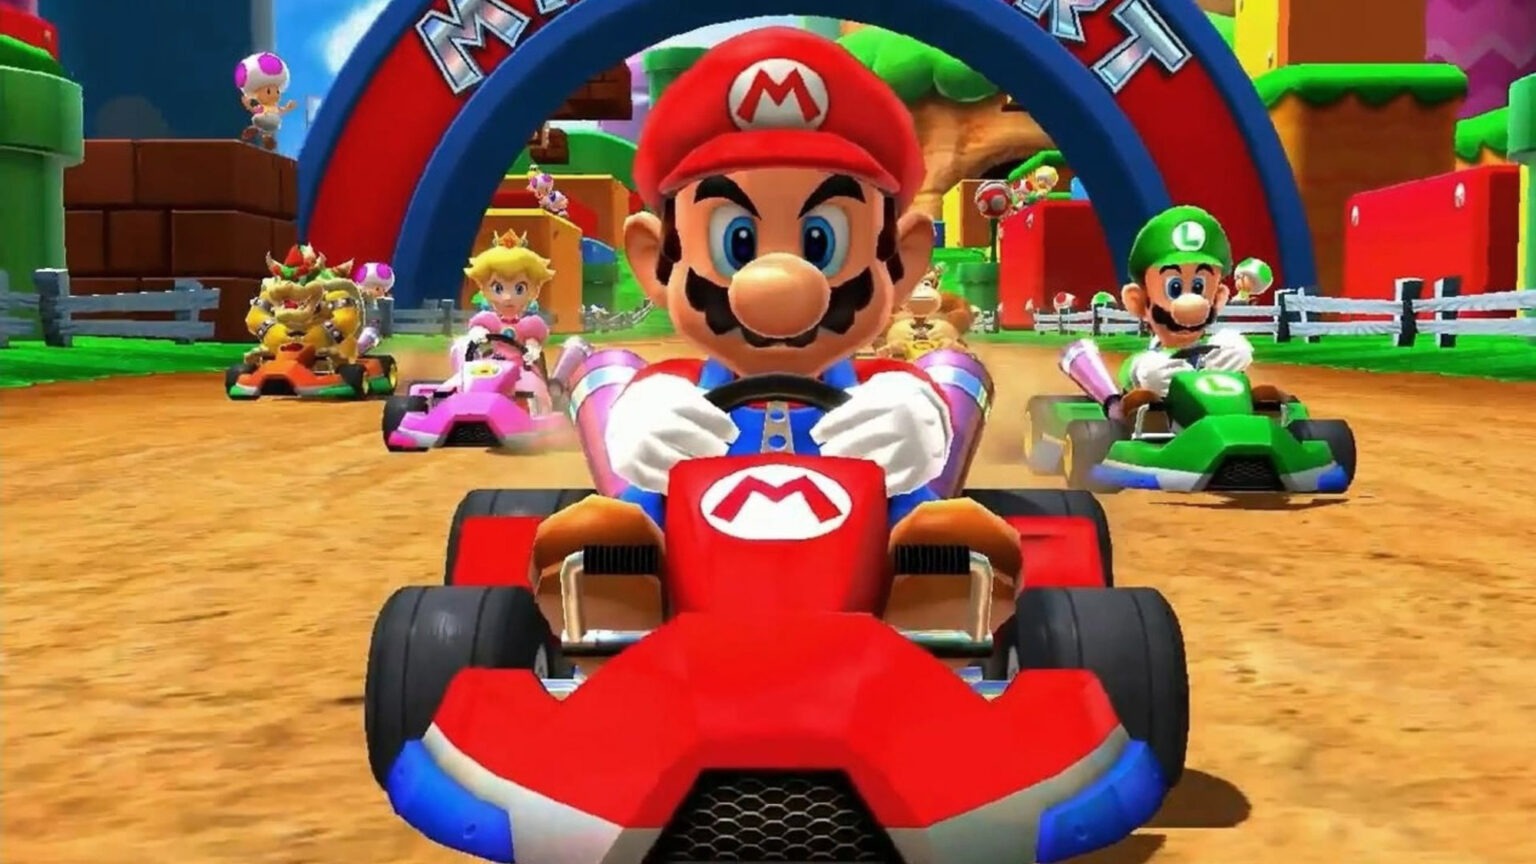 Analistas acreditam em Mario Kart 9 em 2022 e novo console só em 2024